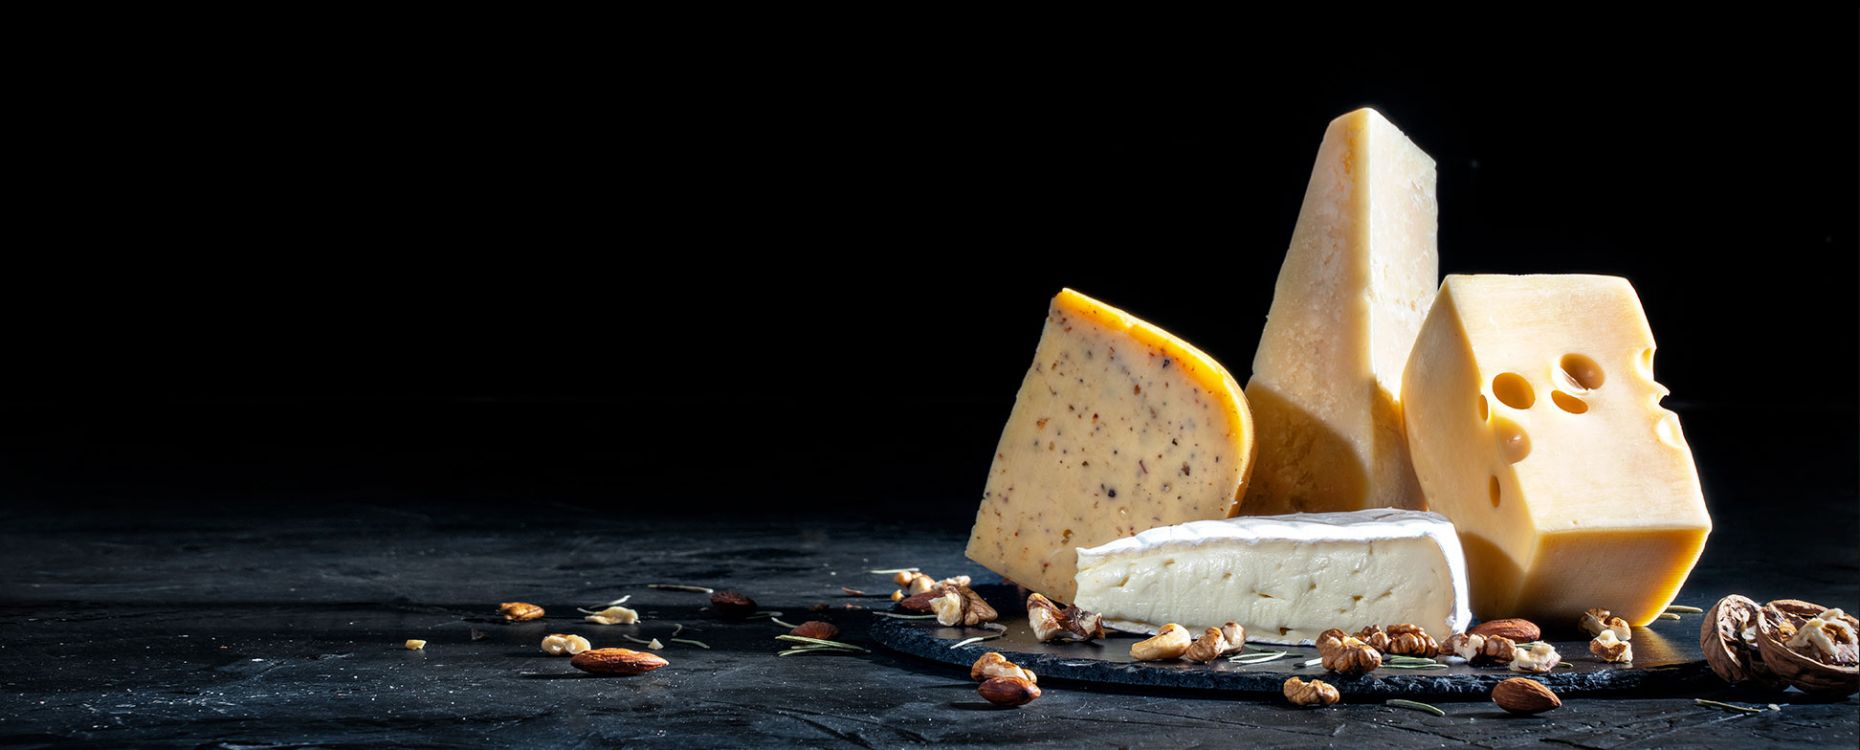 Dix fromages d'Auvergne irrésistibles - Clermont-Ferrand (63000)